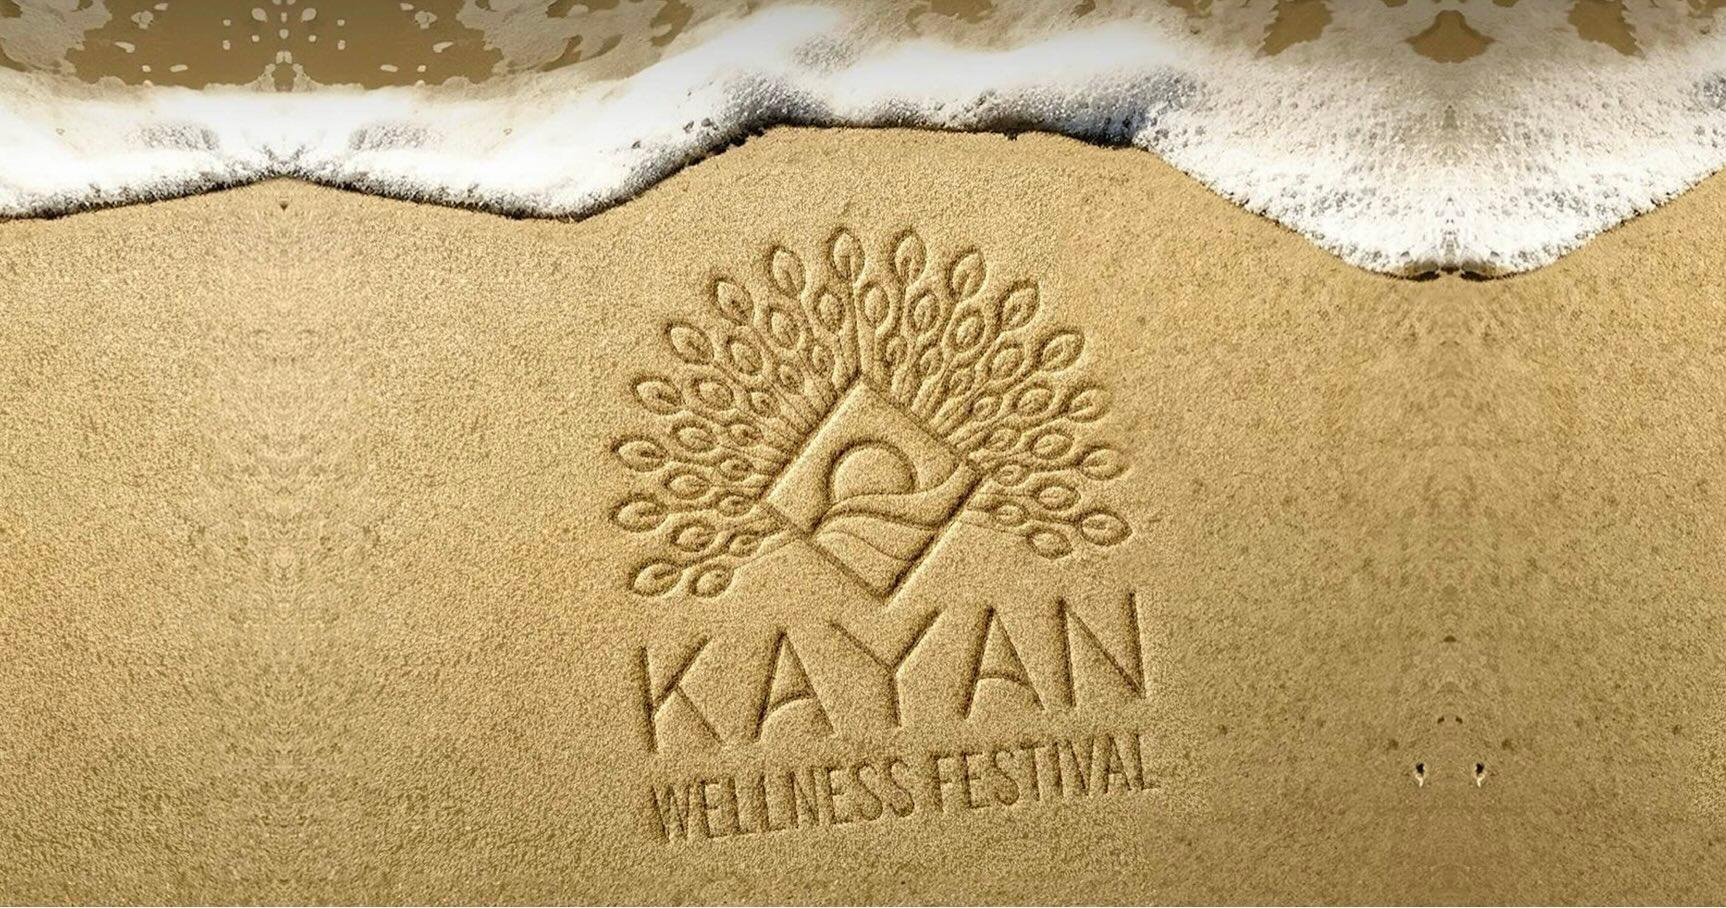 Kayan Wellness Festival is coming to Abu Dhabi 